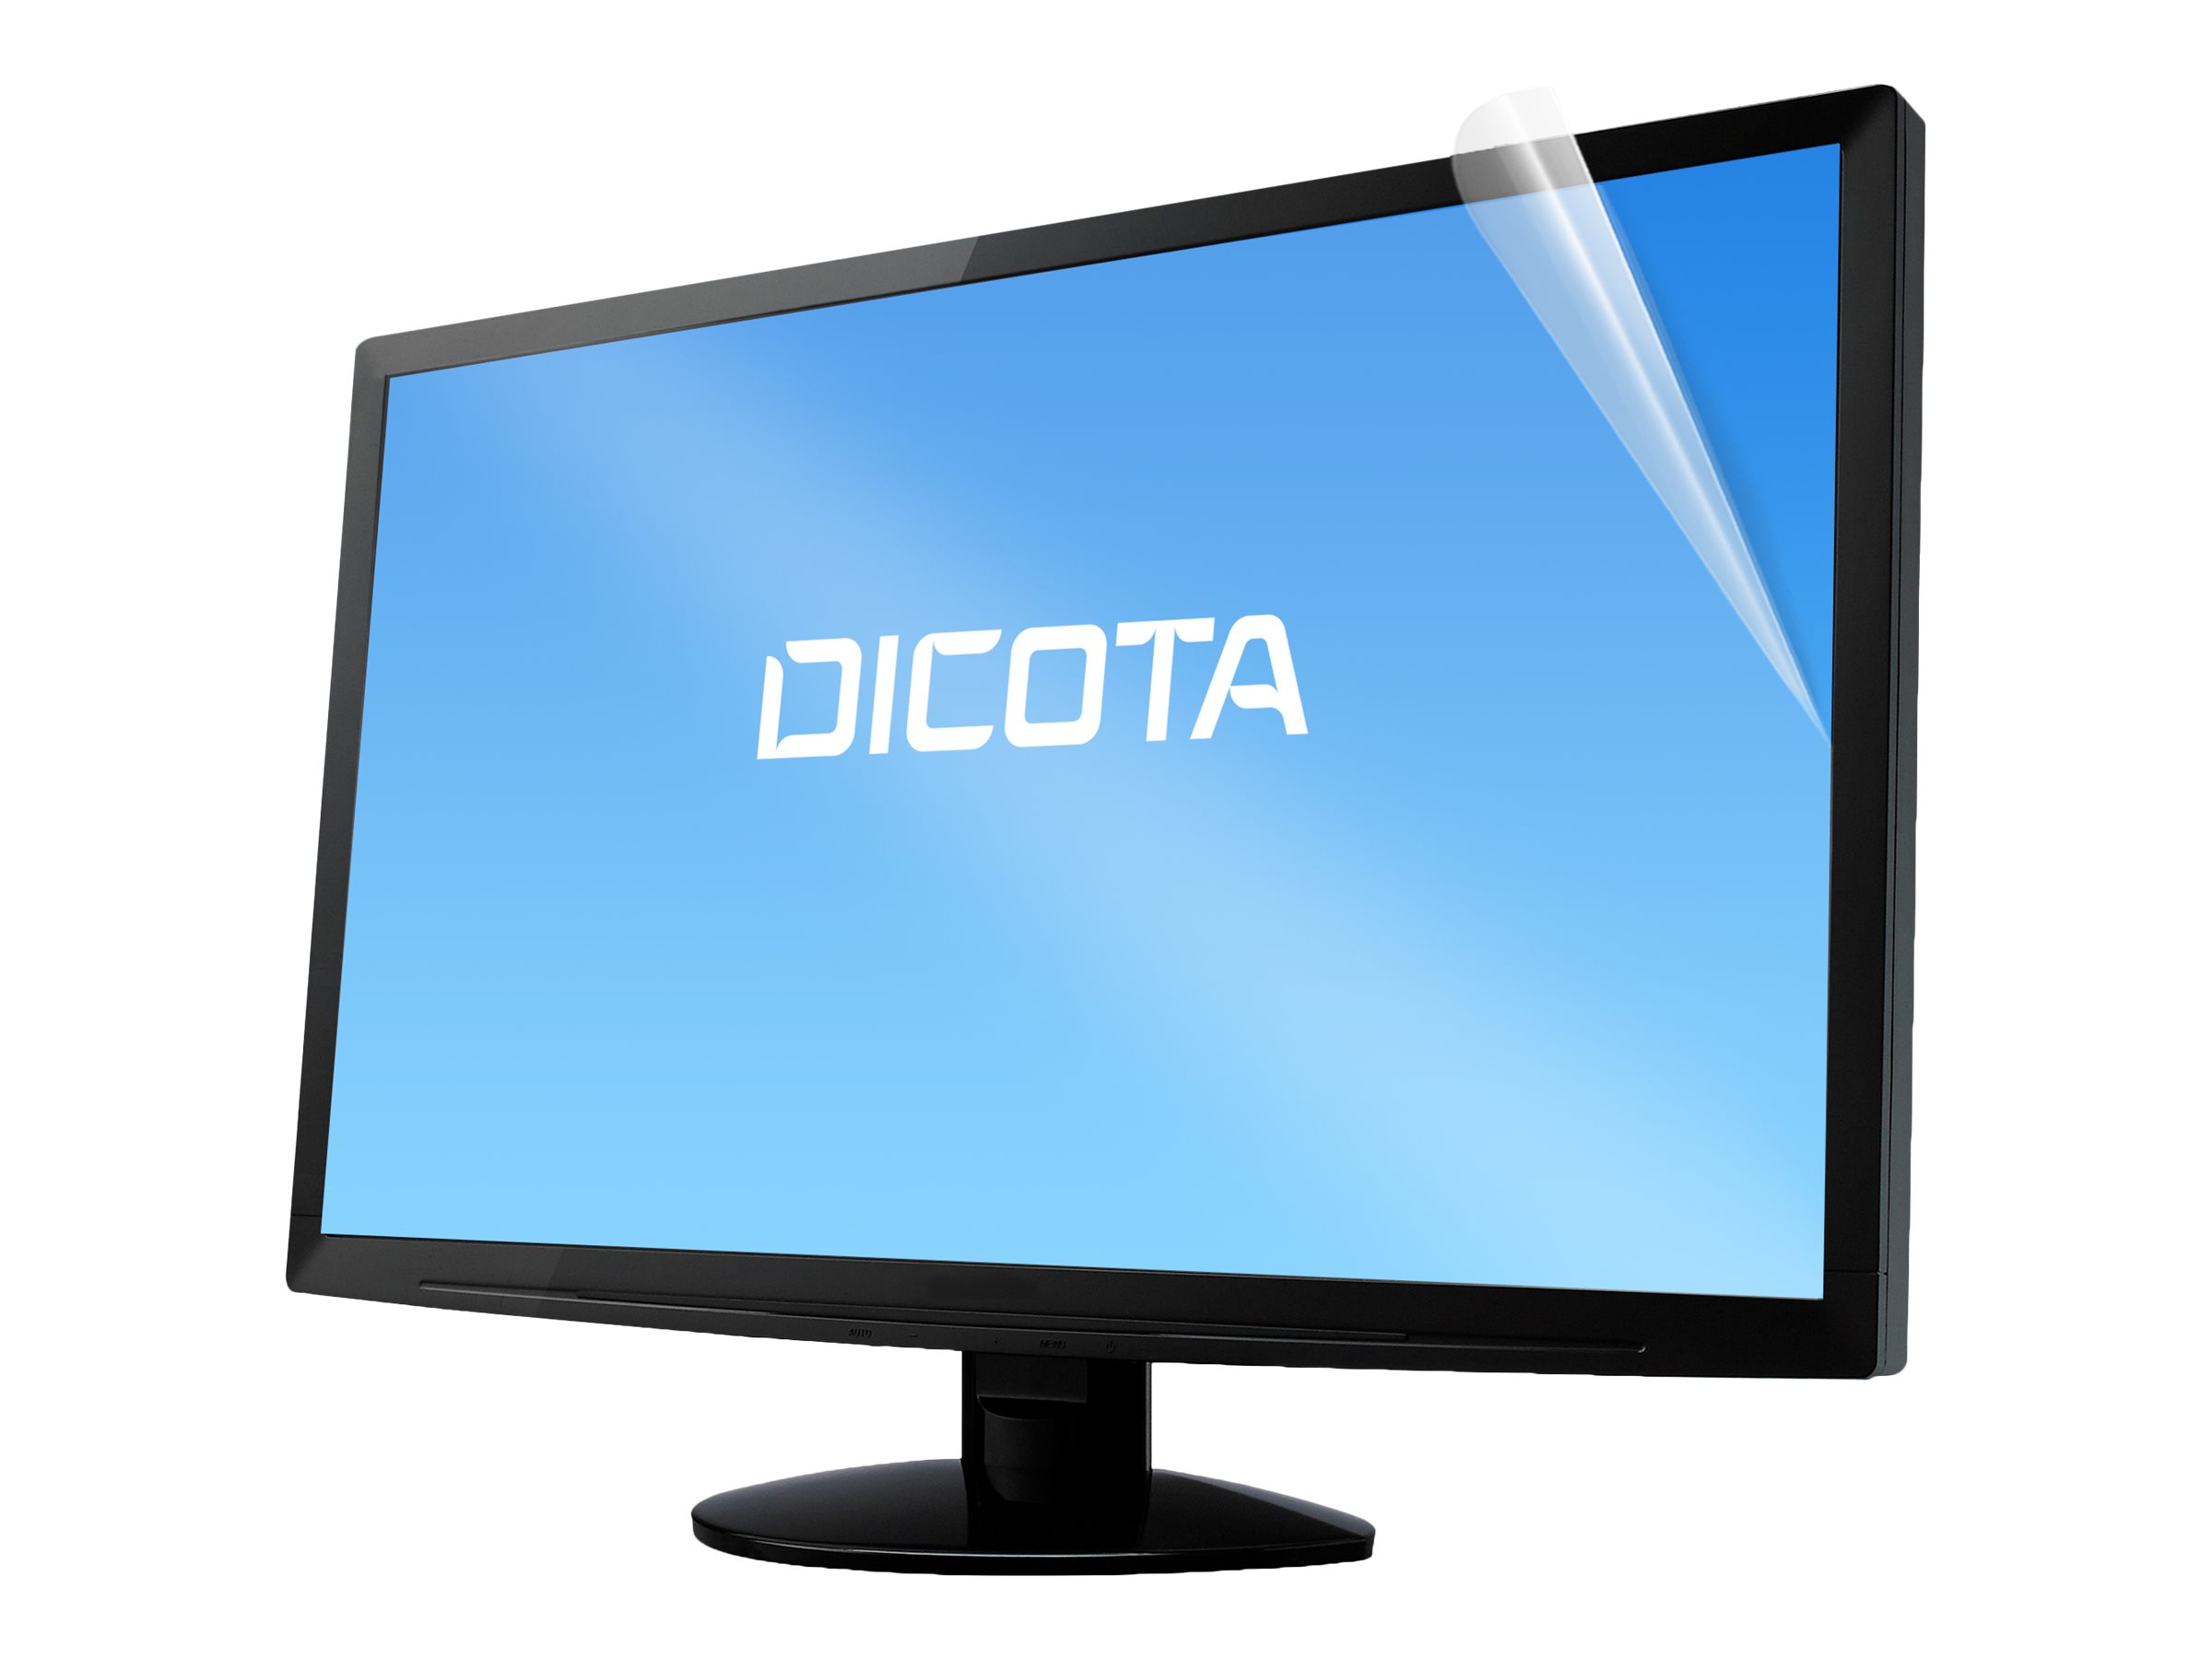 DICOTA - Filtre anti-reflet pour écran - amovible - adhésif - 22.5" - transparent - pour Lenovo ThinkVision T23d-10 - D70368 - Accessoires pour écran